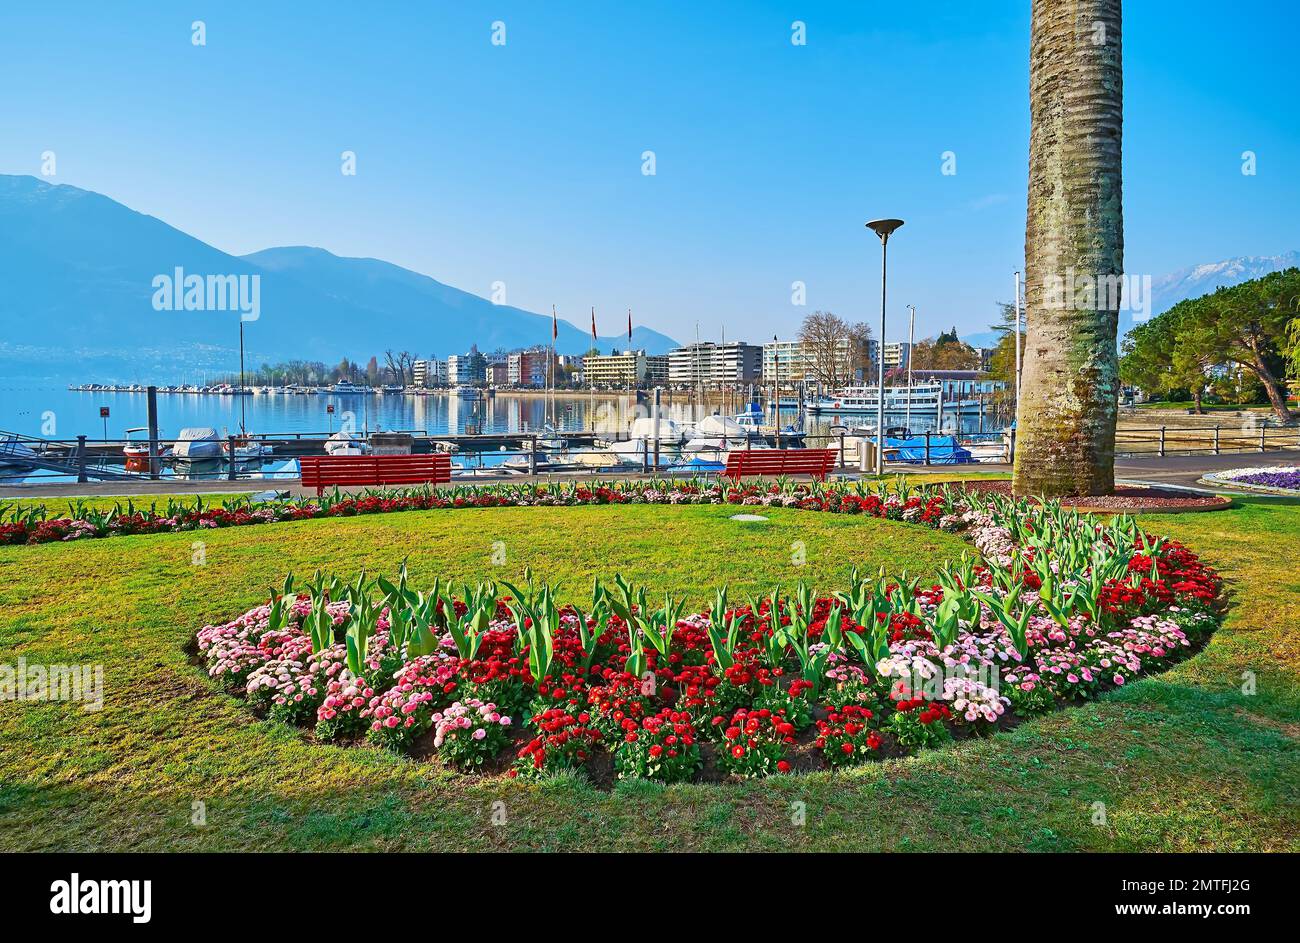 El parque junto al lago con césped verde, macizos de flores ornamentales de margaritas rojas y rosadas contra la parte y los Alpes brumosos, el lago Maggiore, Locarno, Suiza Foto de stock